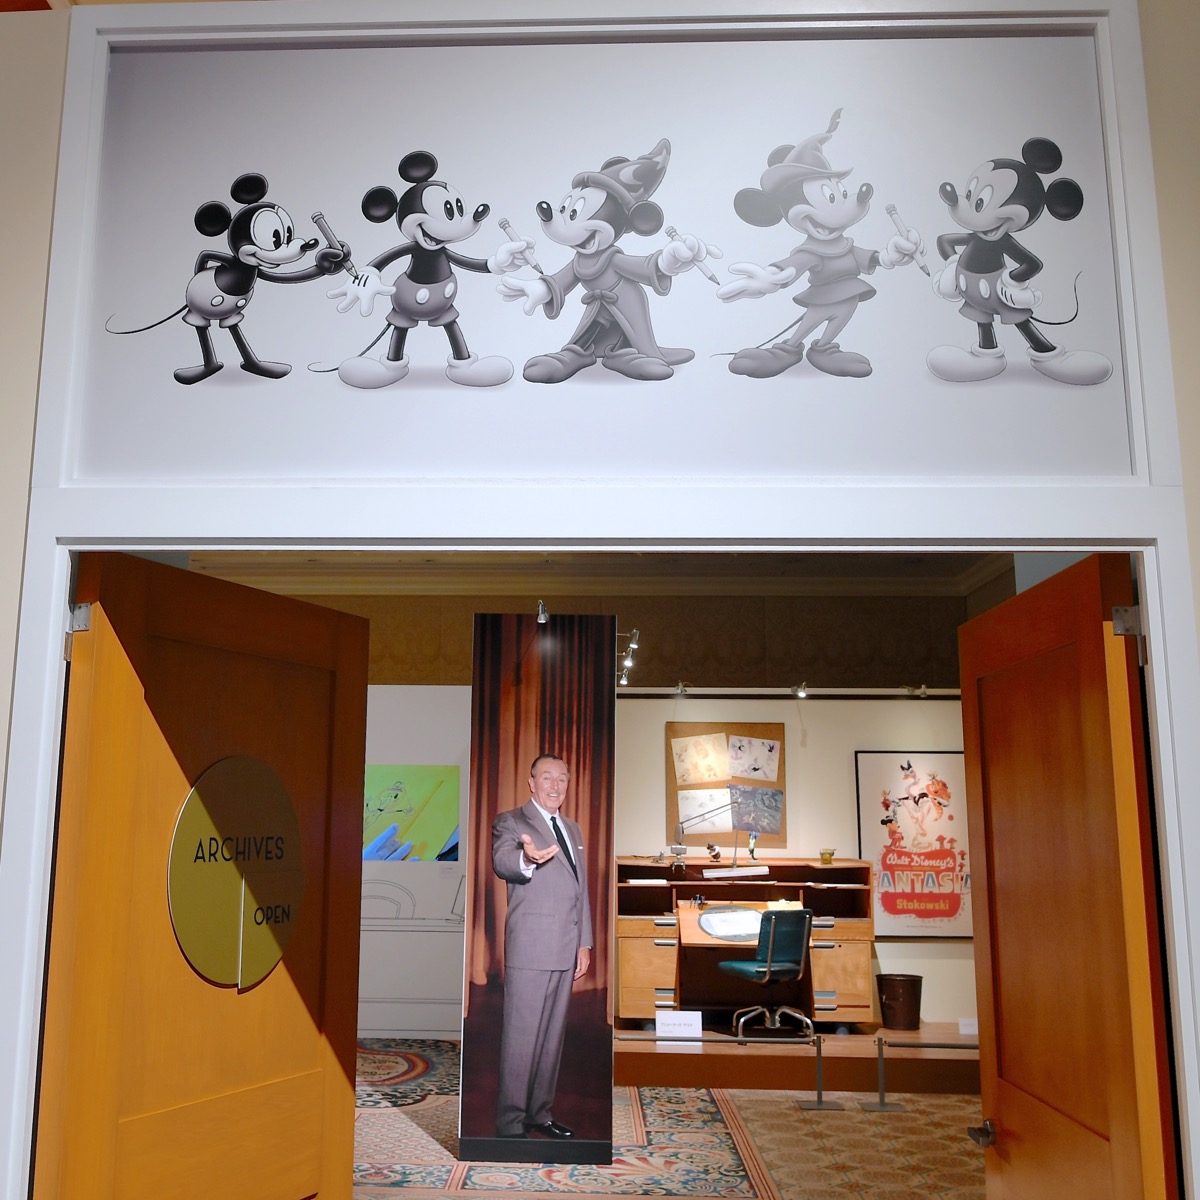 「ウォルト・ディズニー・アーカイブス展~ミッキーマウスから続く、未来への物語~」